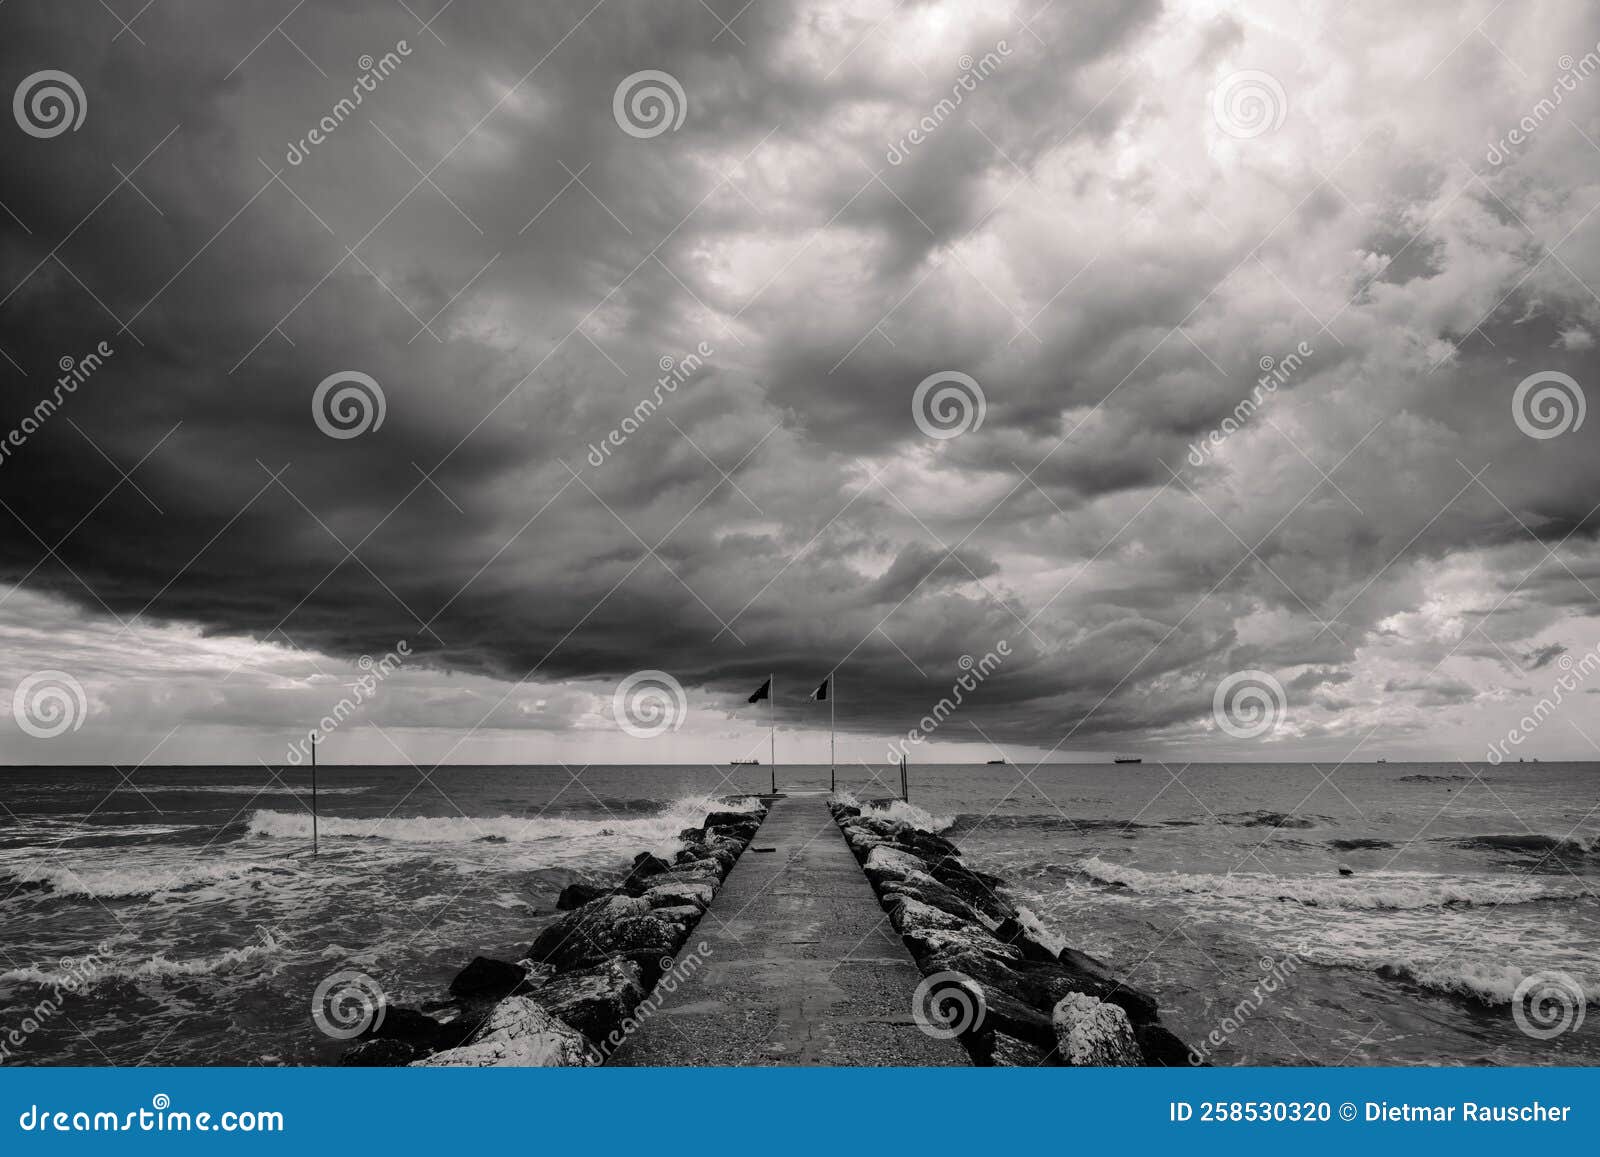 storm clouds on lido di venezia beach